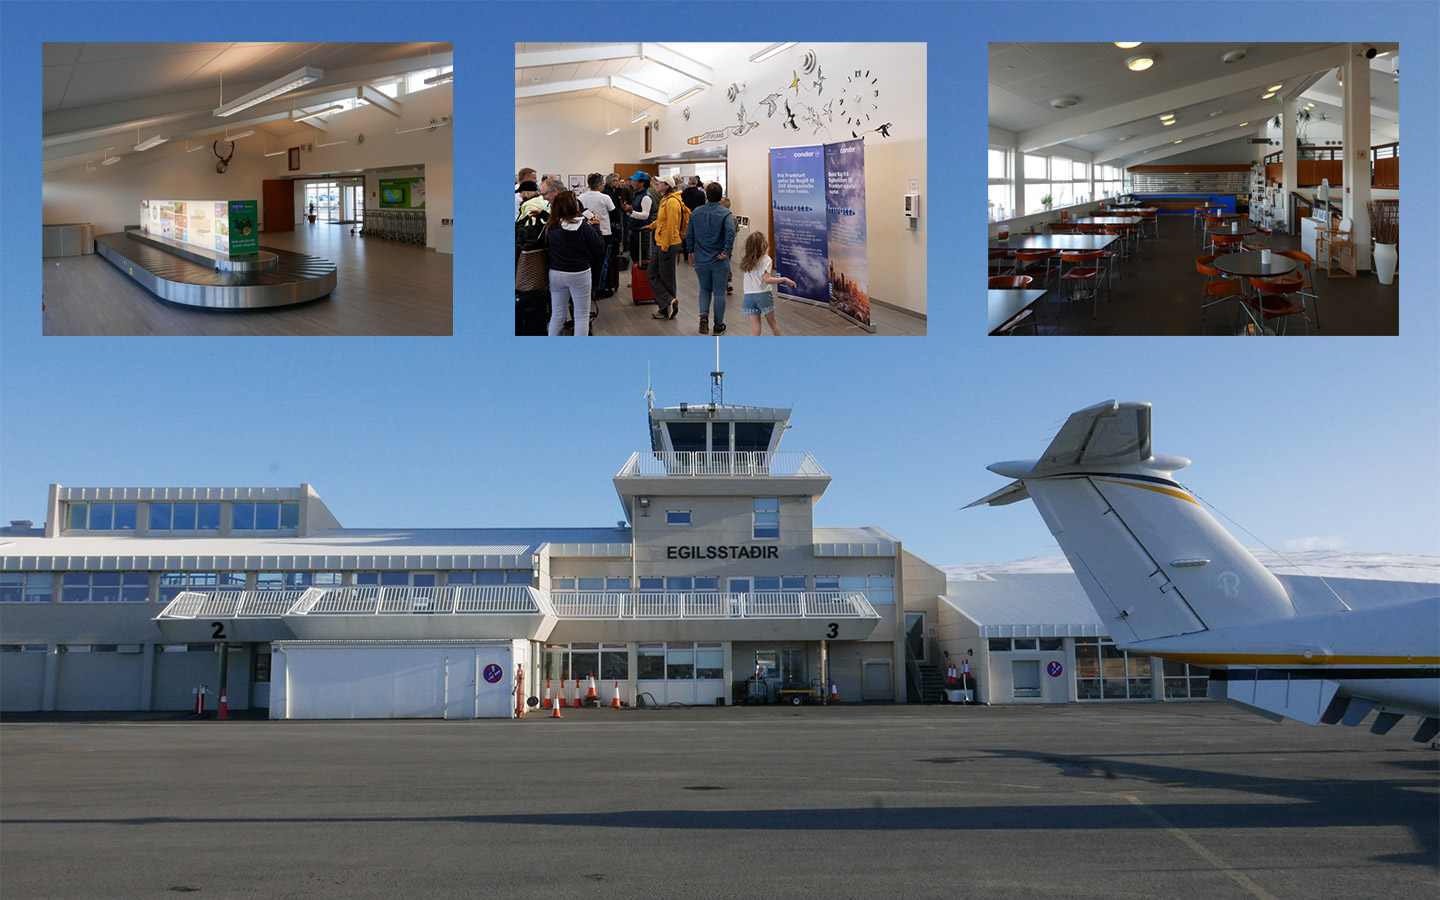 Der Flughafen Egilsstaðir ist kompakt und freundlich